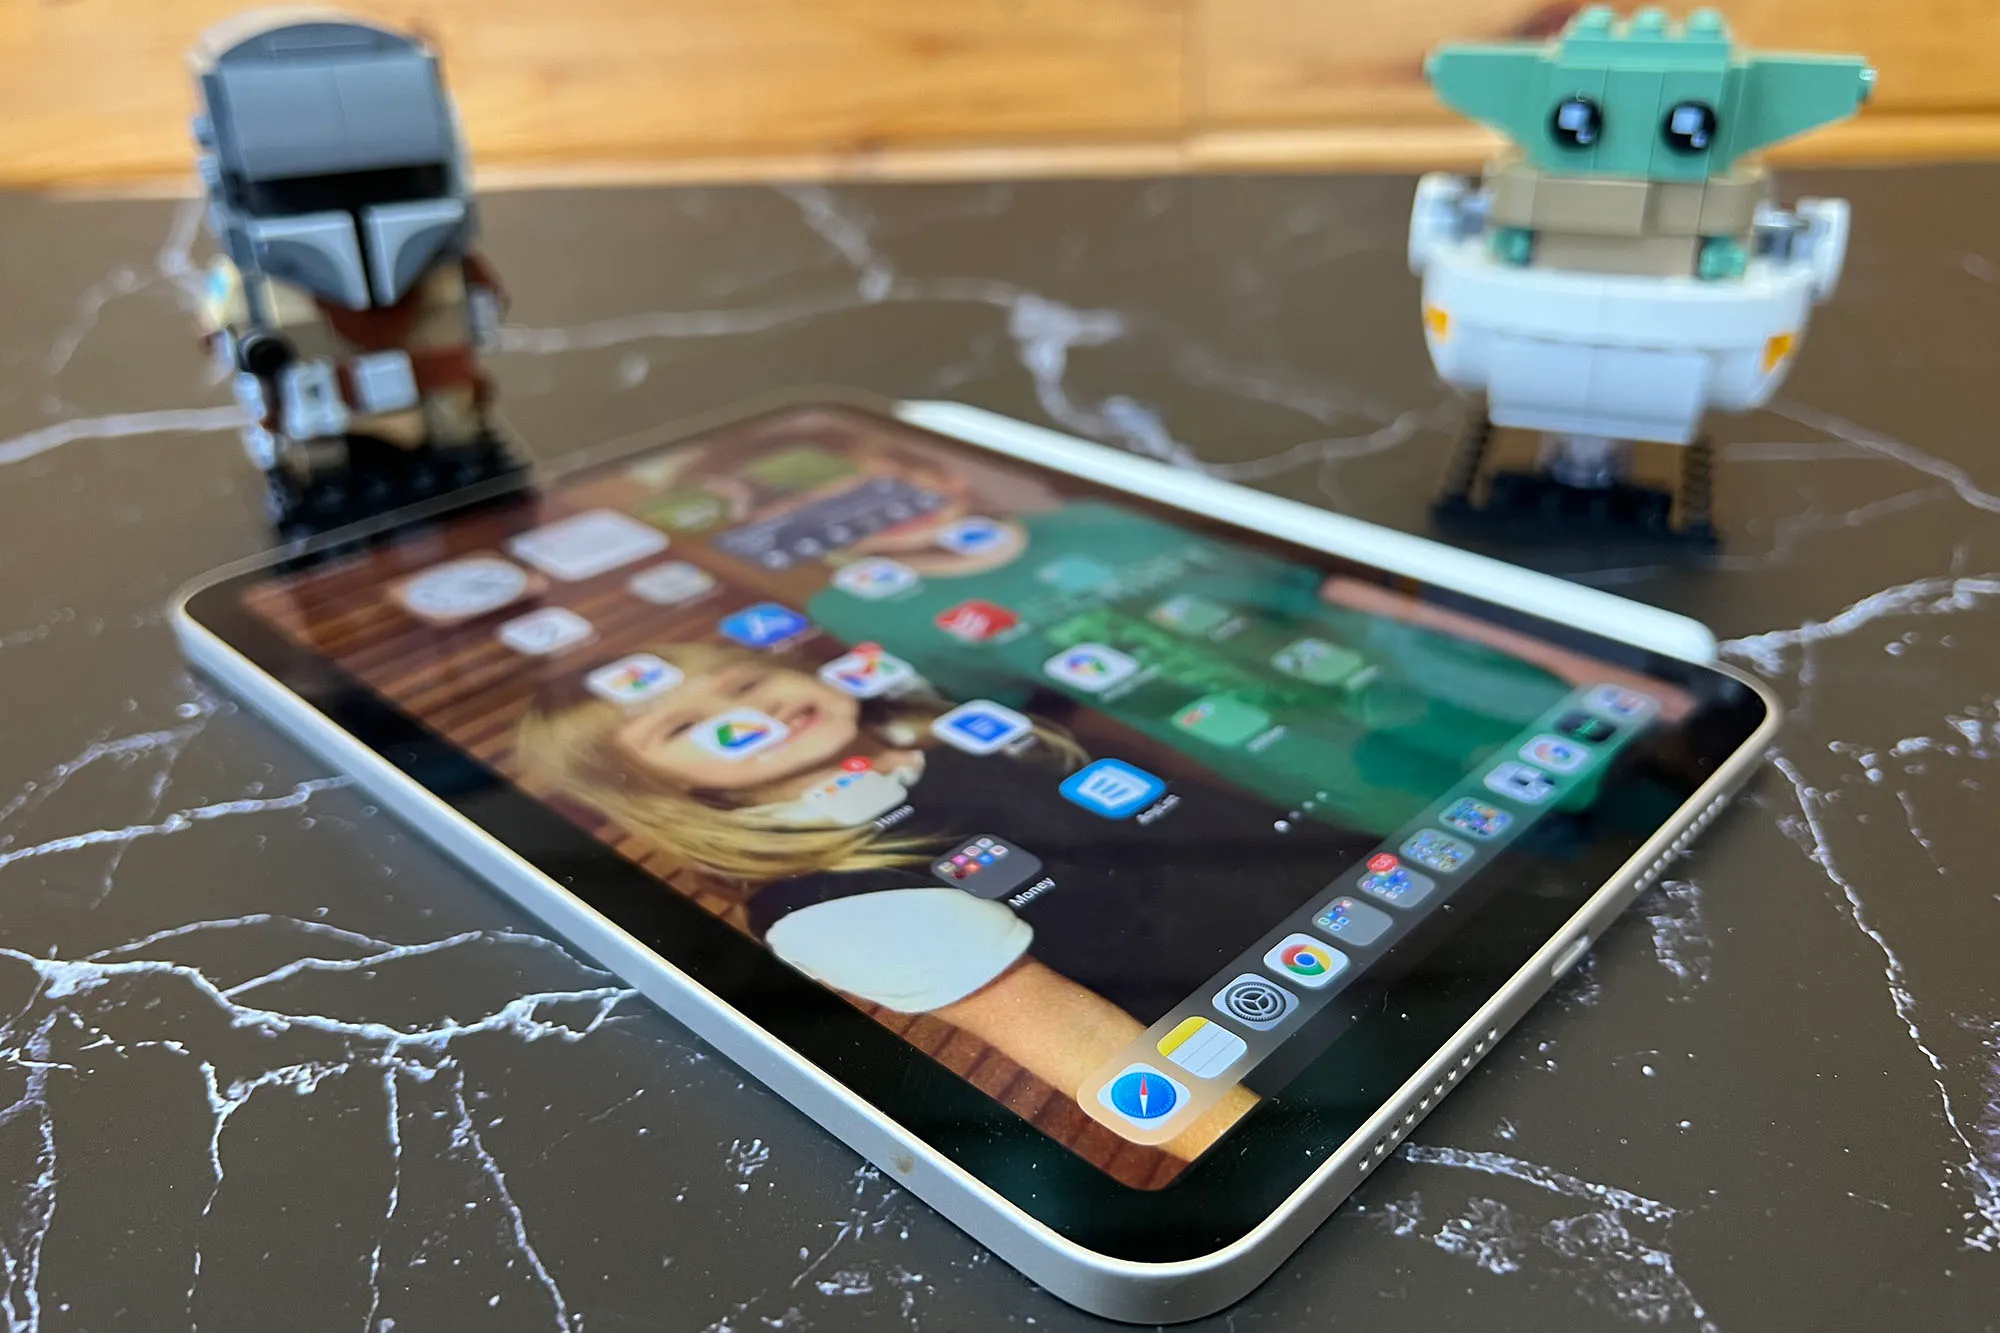 Apple iPad Mini (2021)